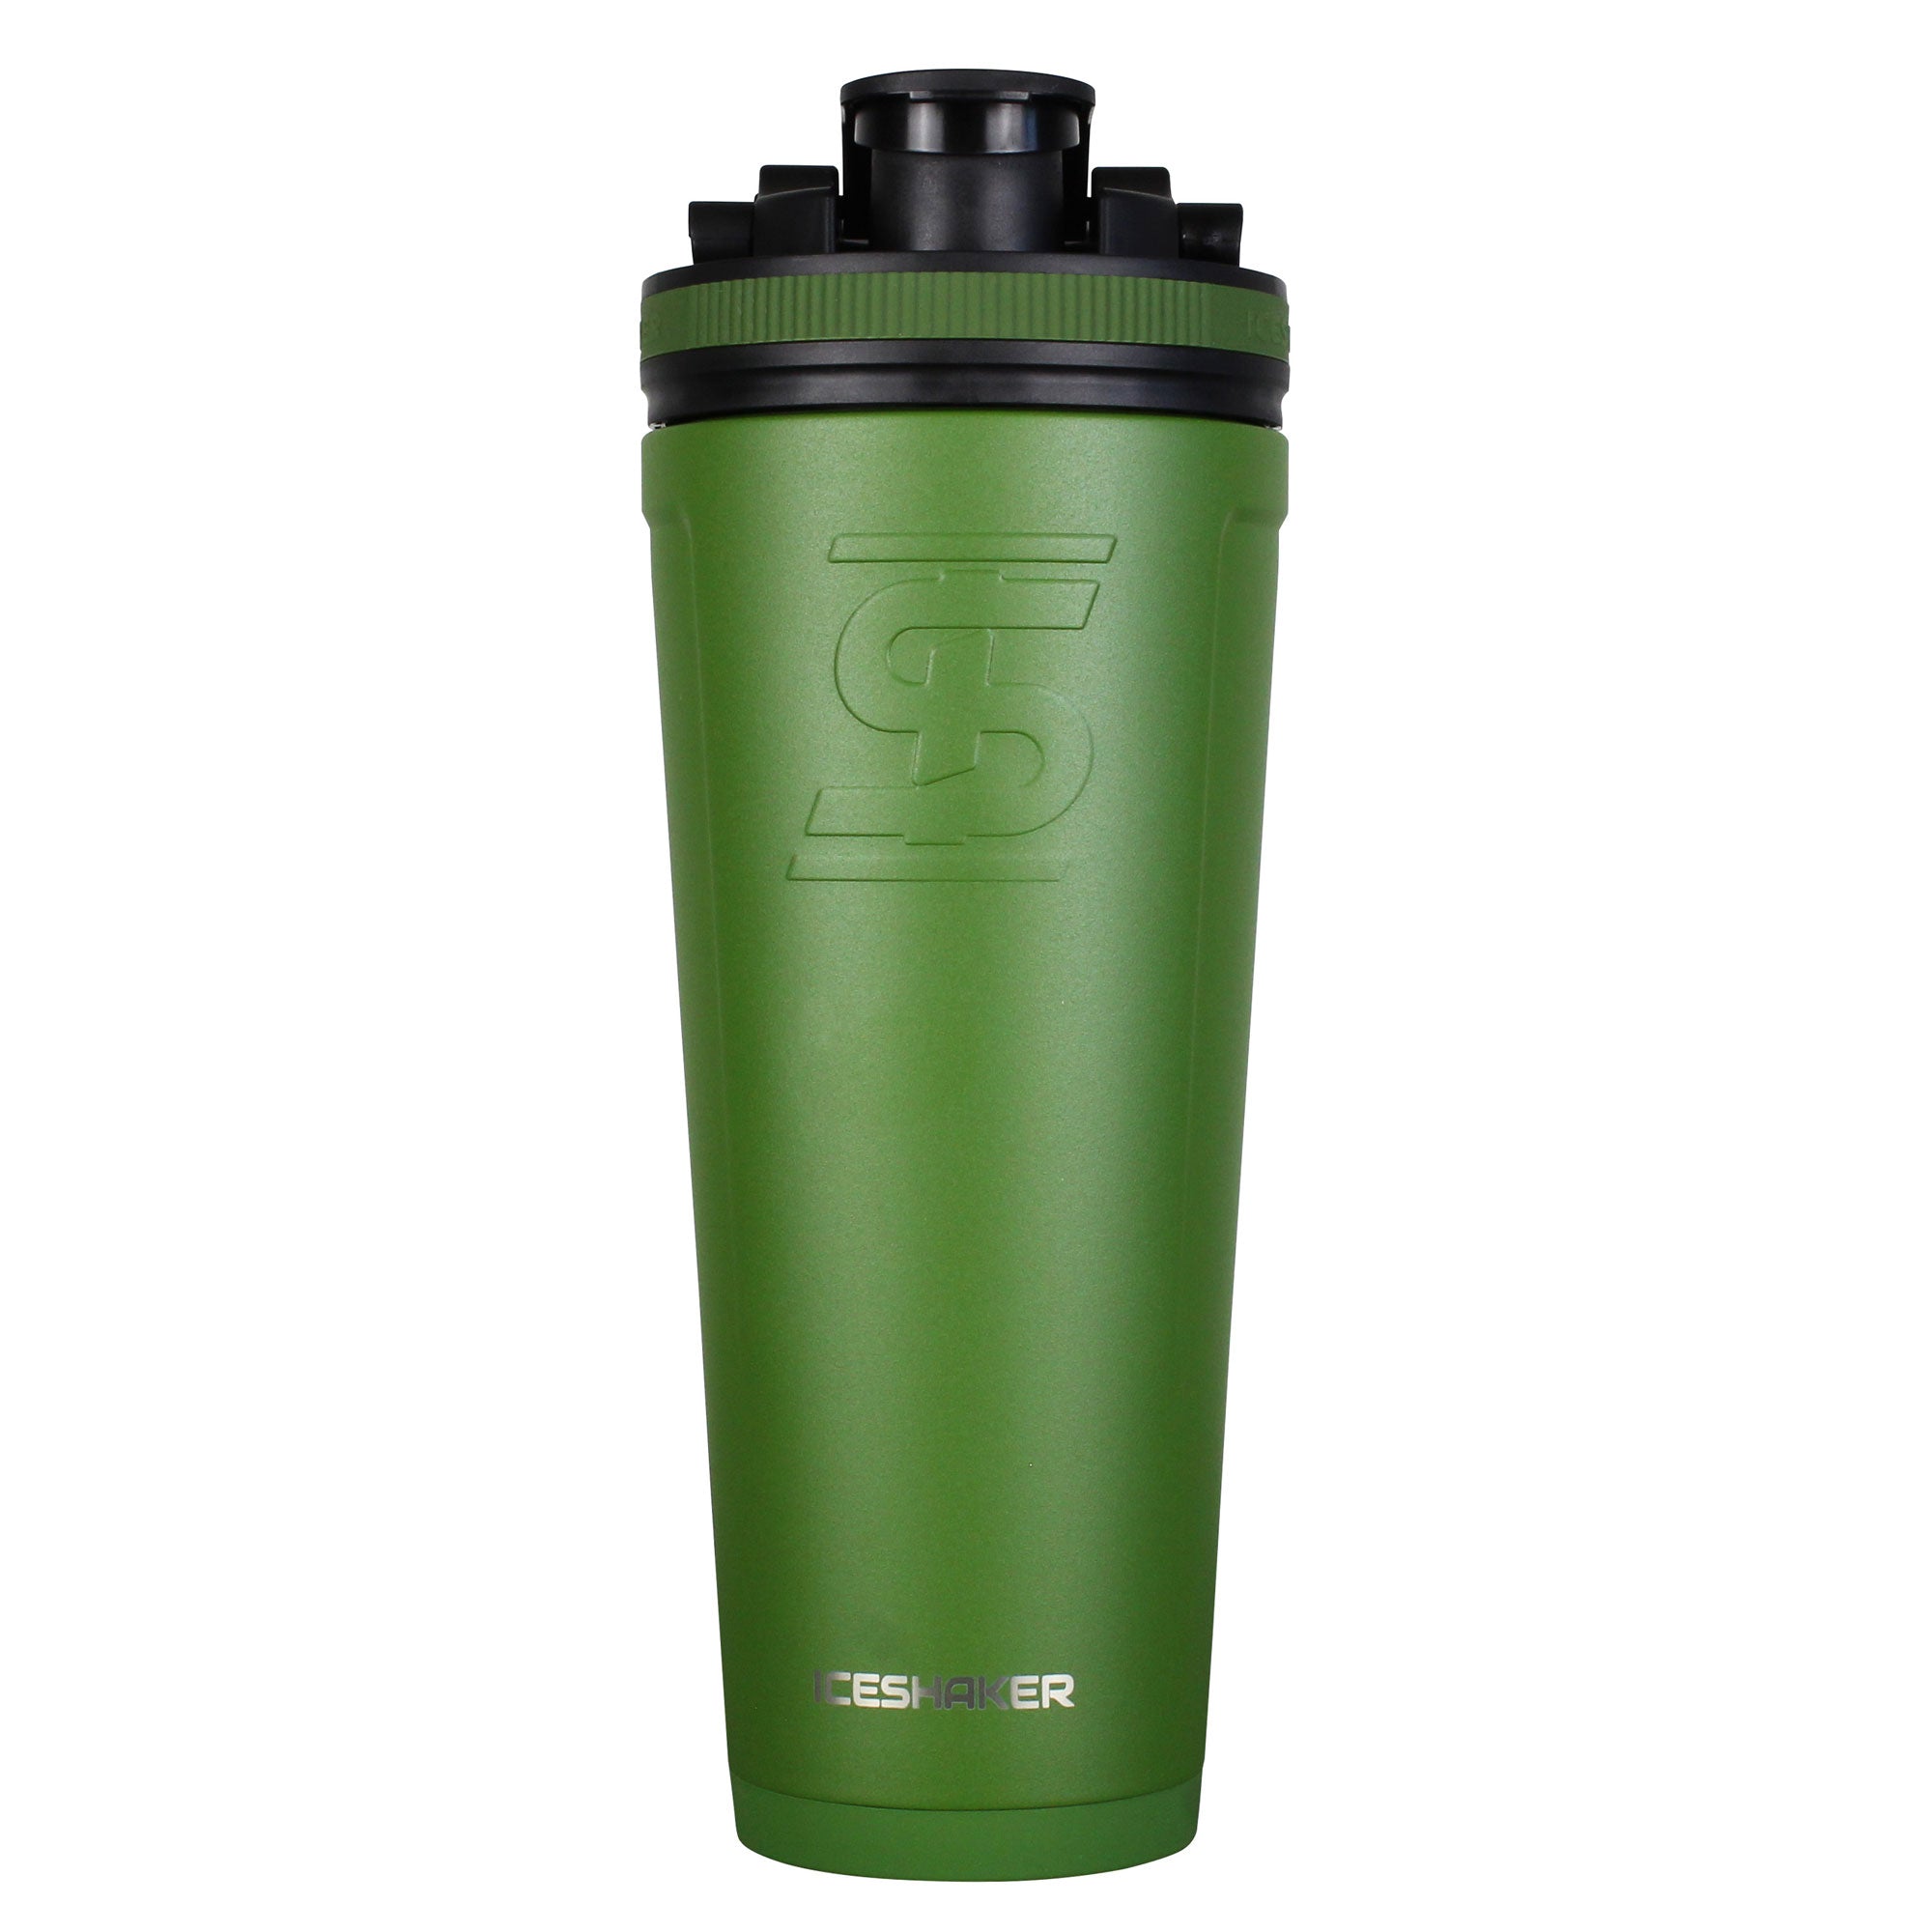 Ice Shaker 36oz Bottle - Green